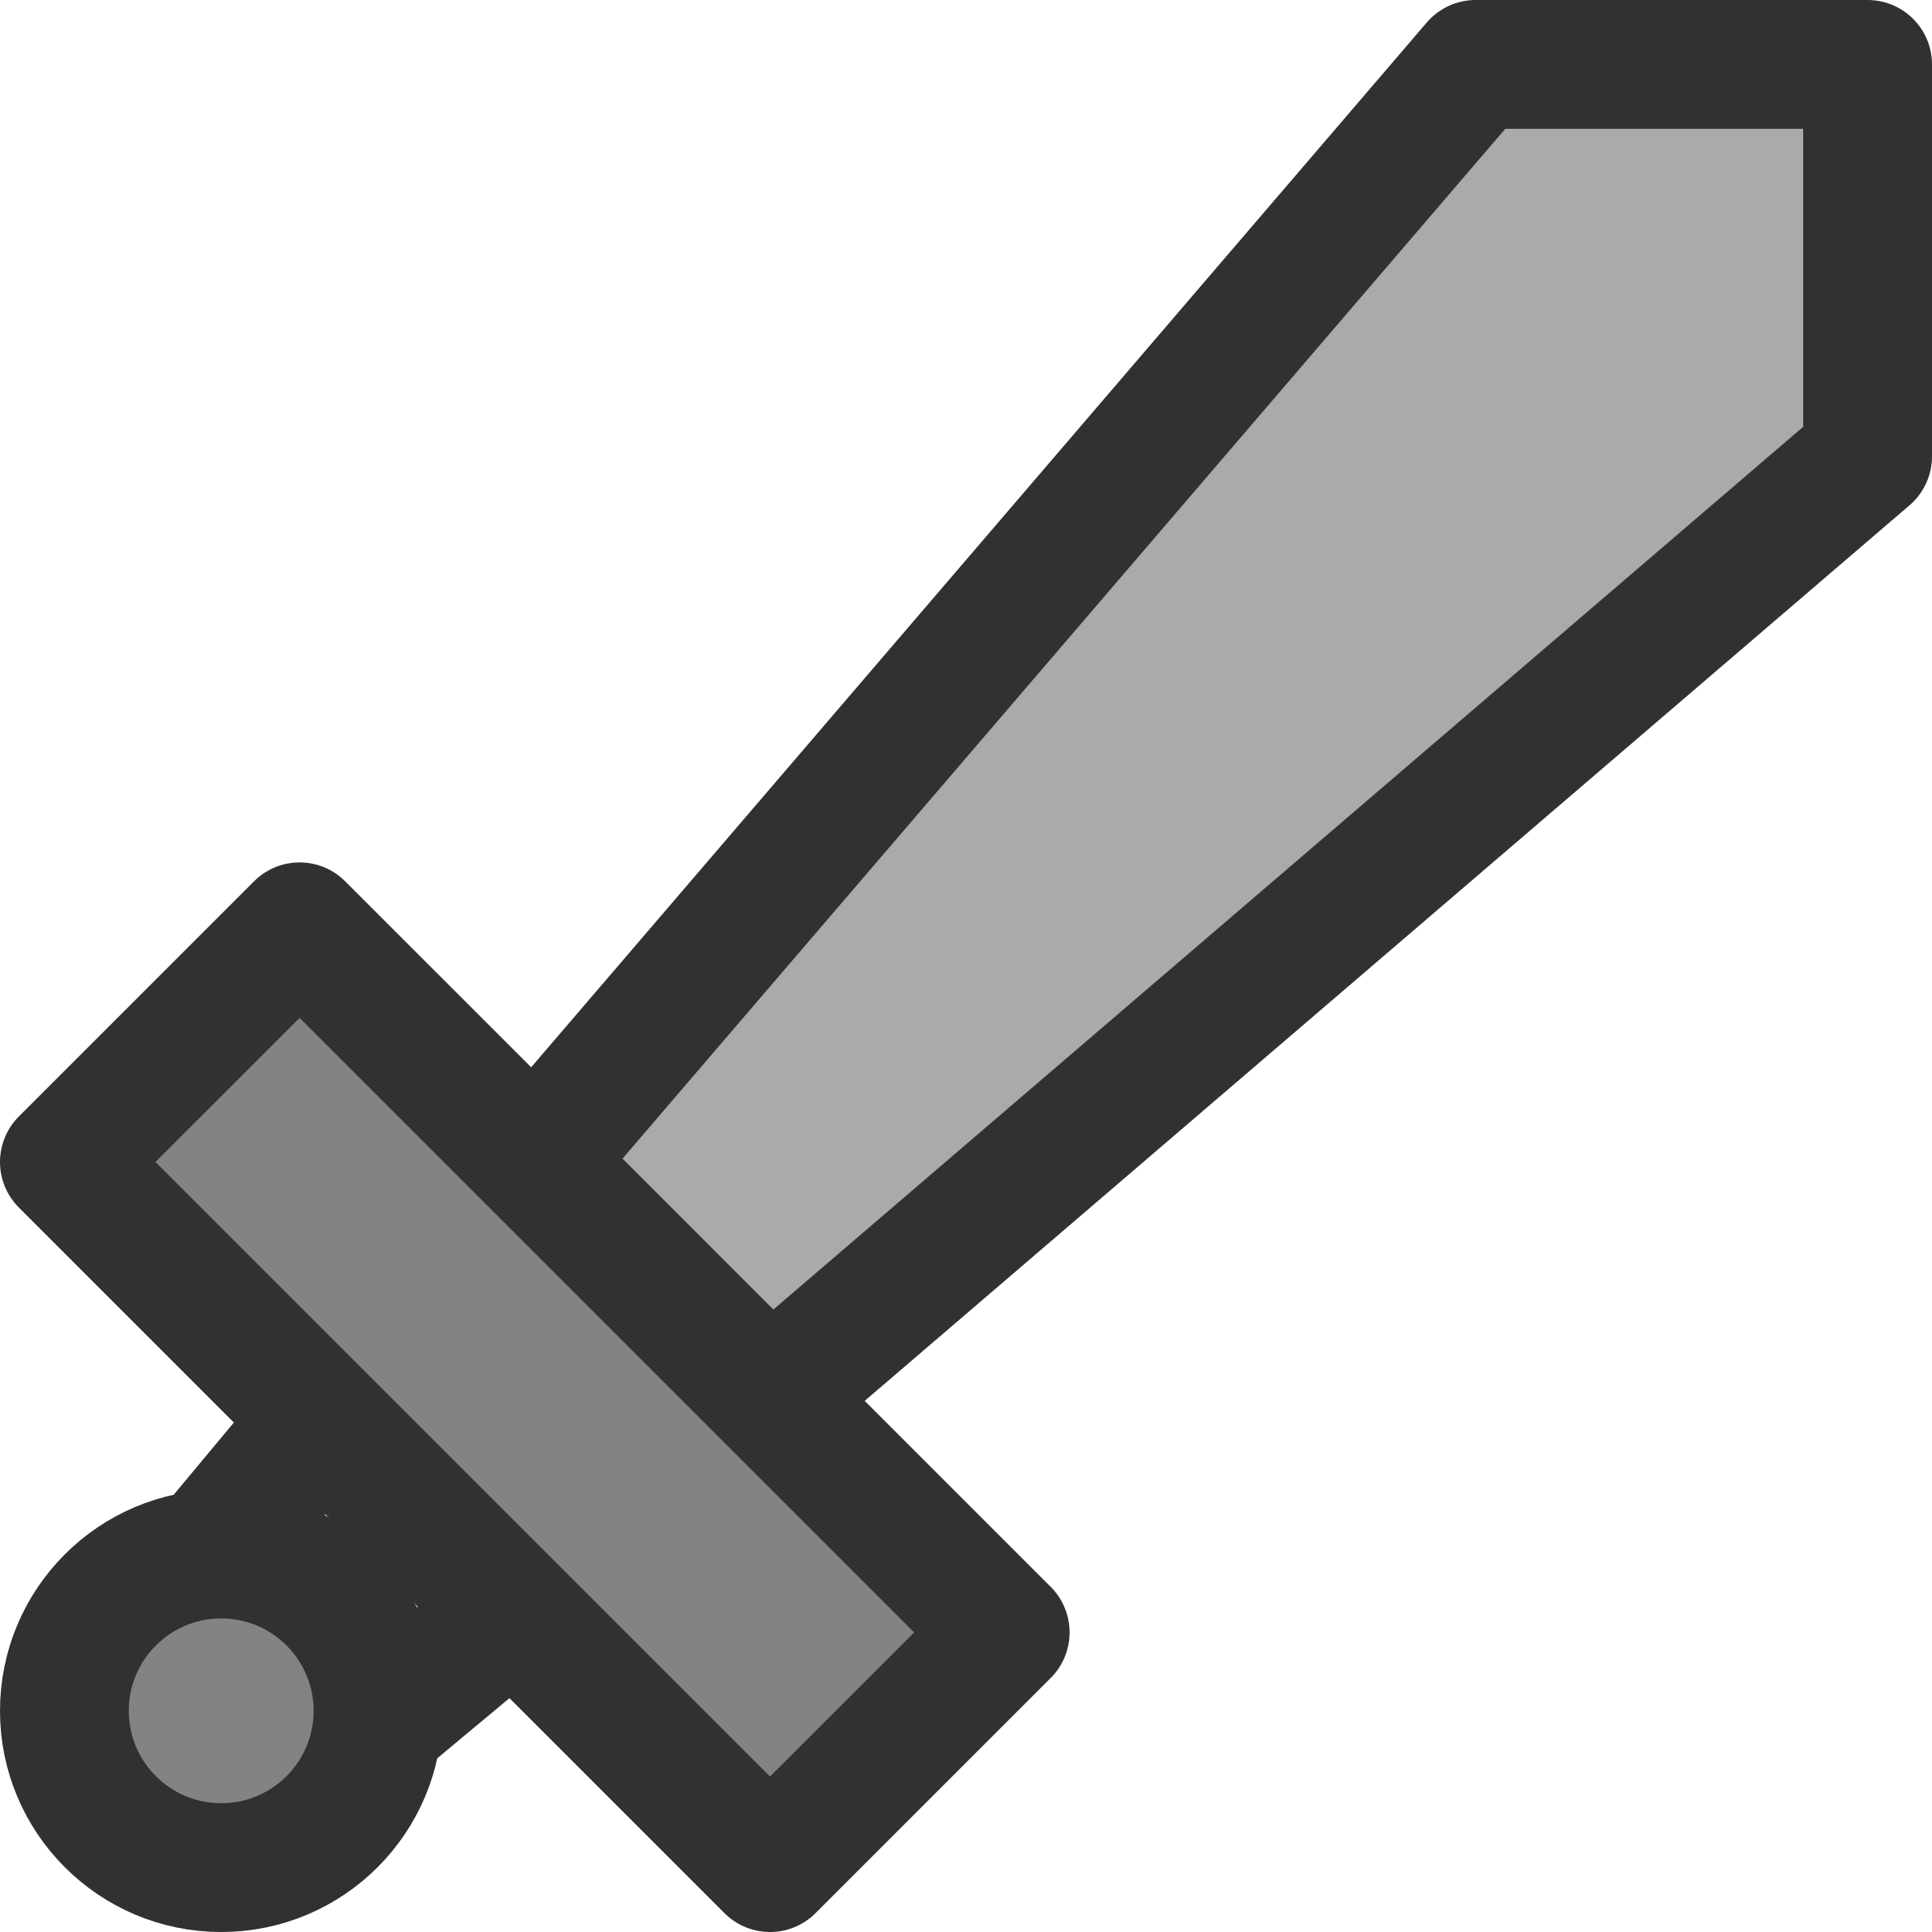 Metal Sword Icon Clip arts